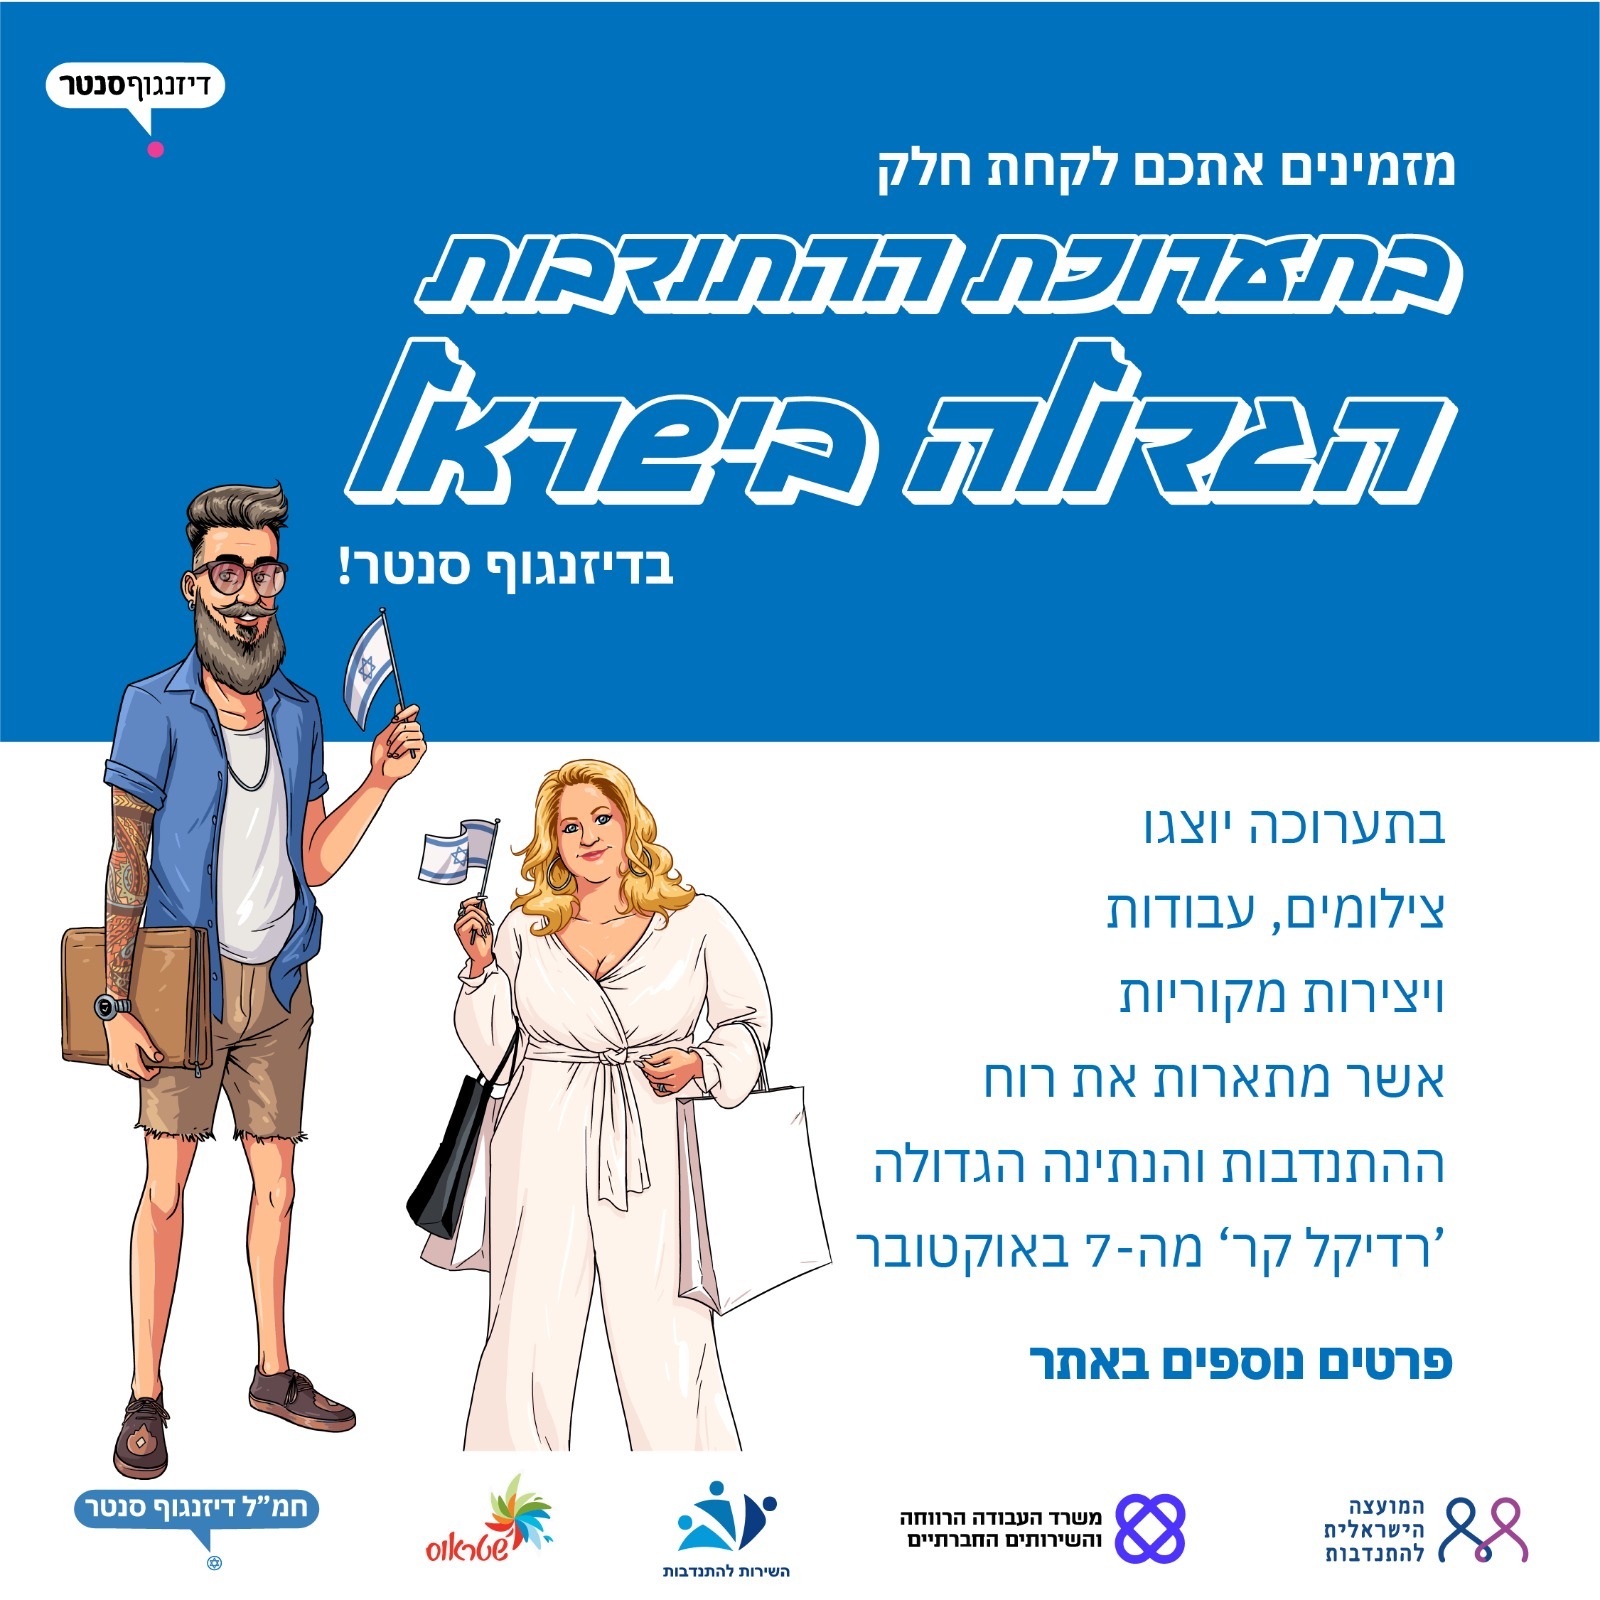 תערוכת ההתנדבות הגדולה בישראל